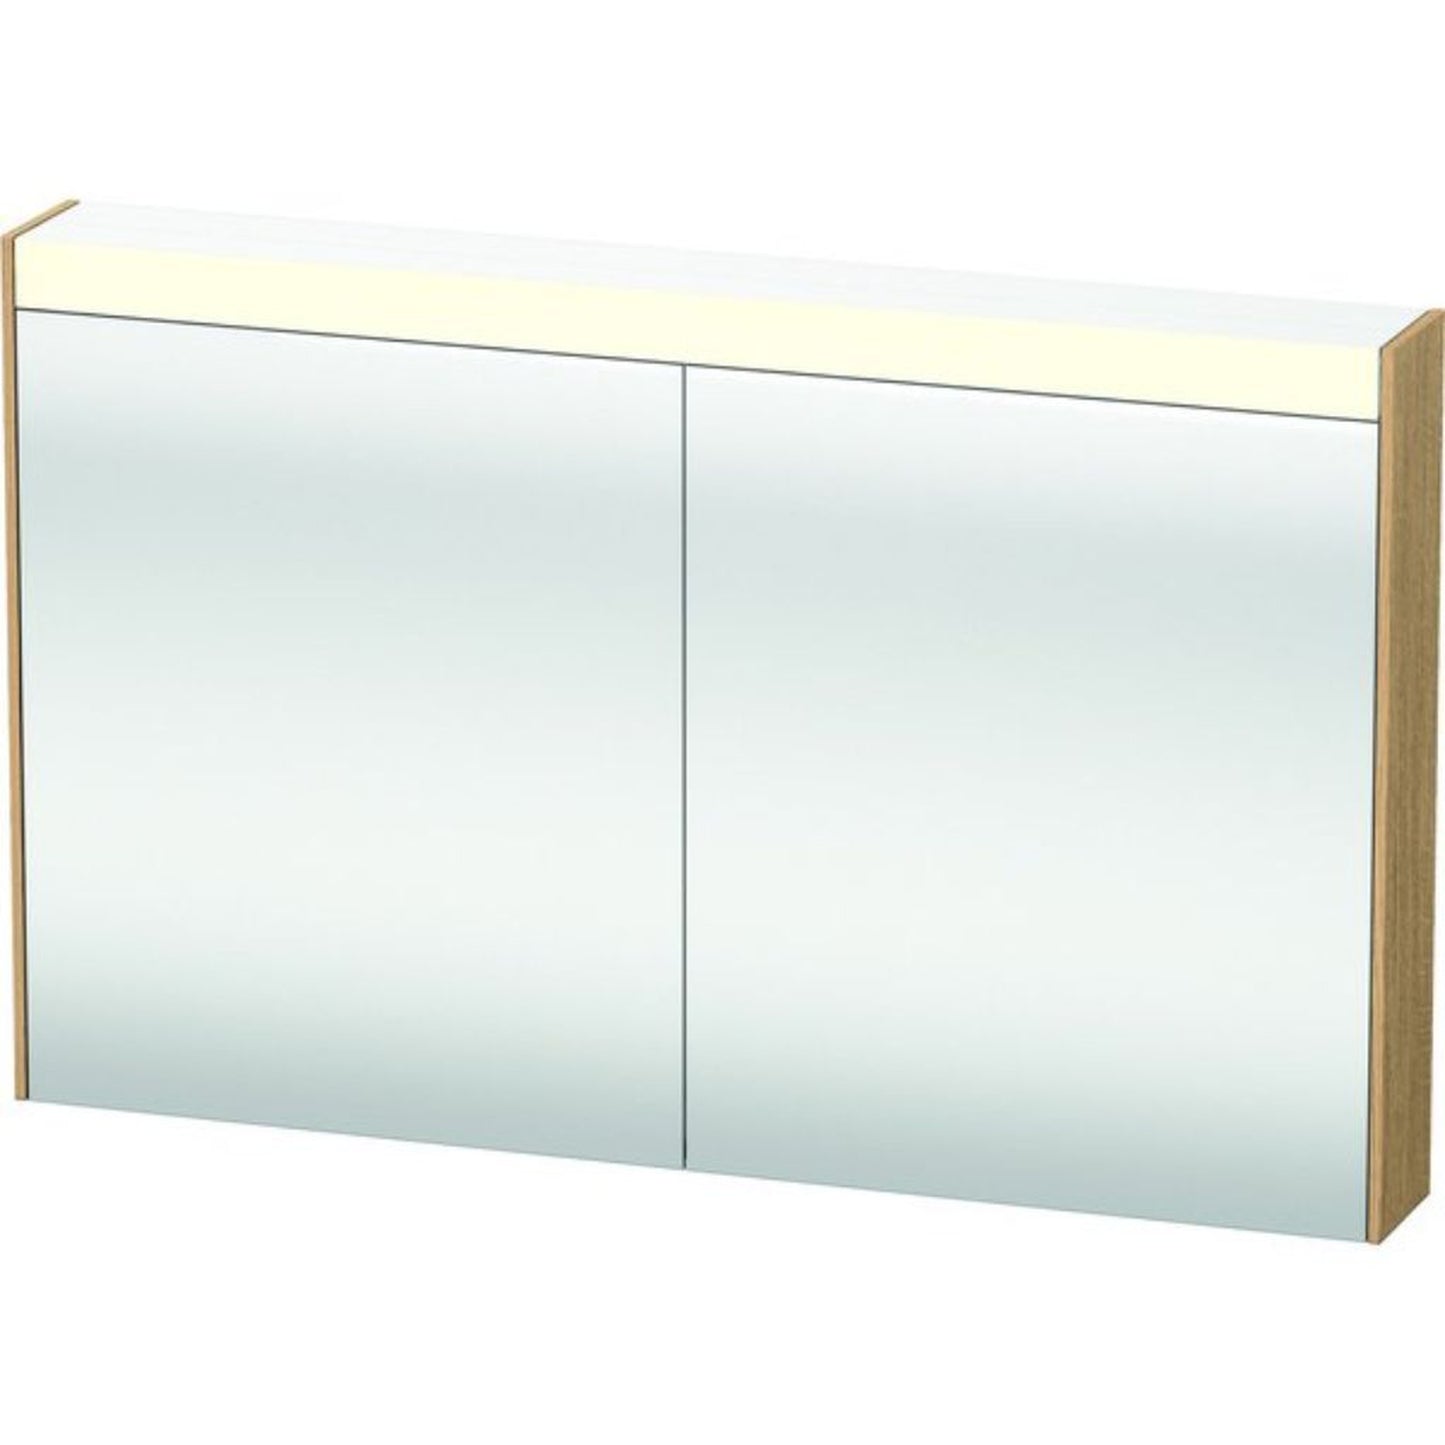 Duravit Brioso 48" x 30" x 6" Mirror Cabinet With Lighting Natural Oak